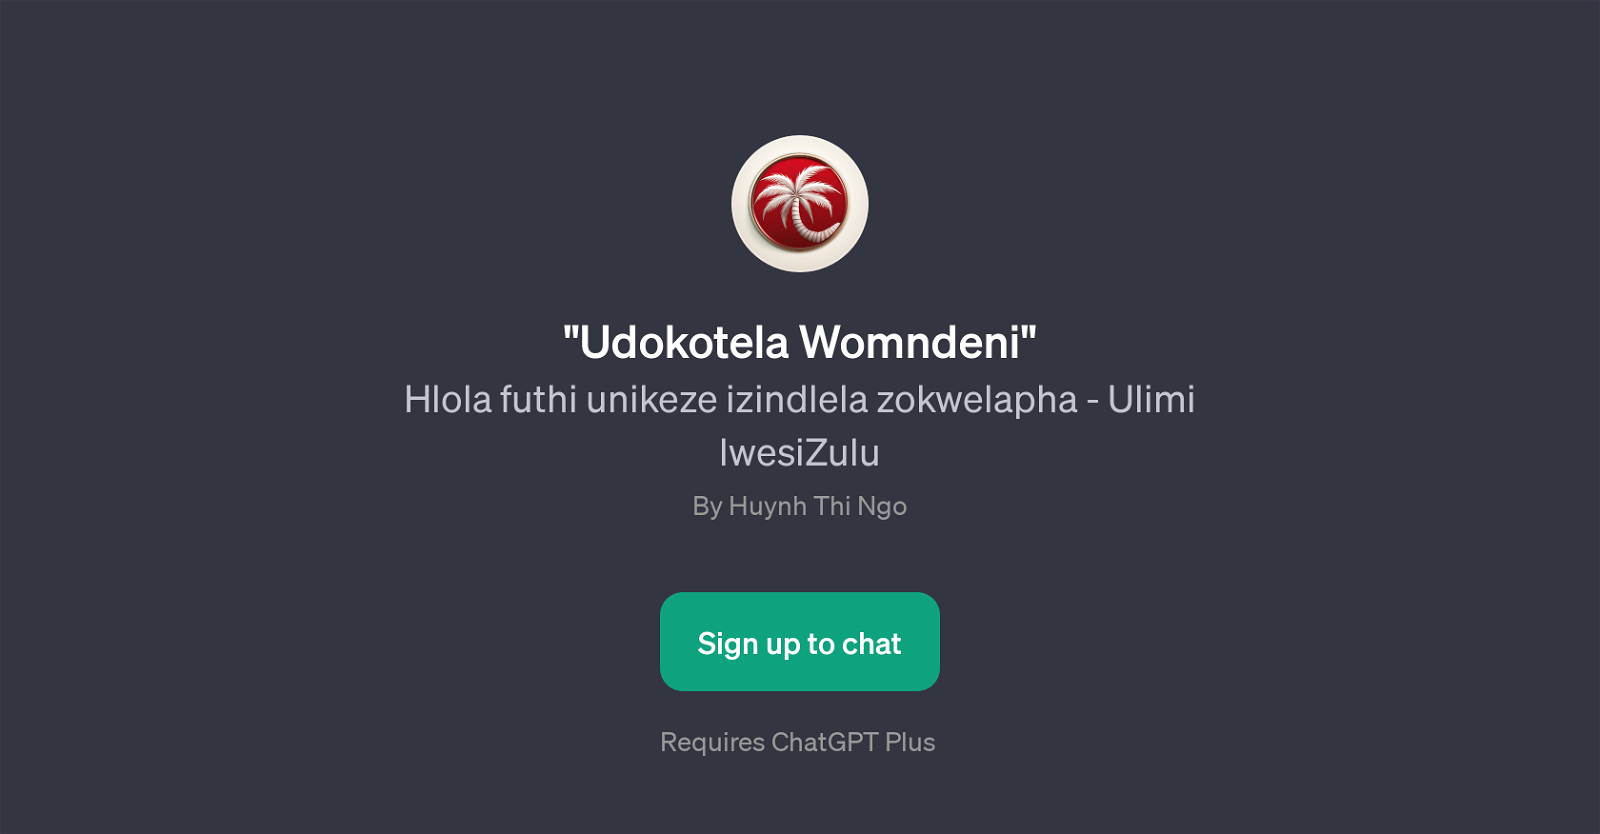 Udokotela Womndeni website